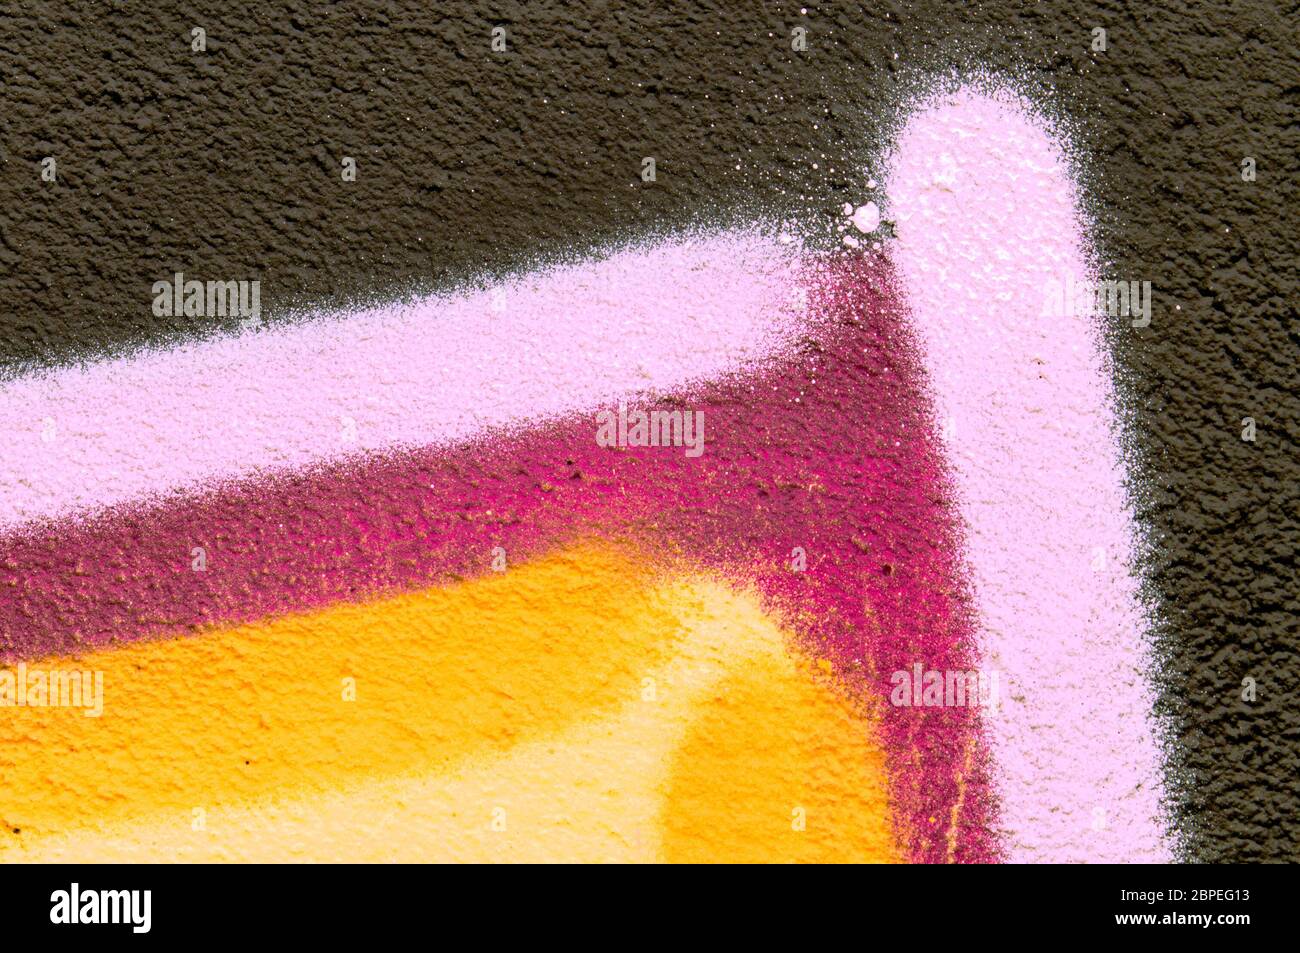 Ausschnitt aus einem Graffiti bzw. Graffito (Sprühbild) als Hintergrundbild, Wallpaper, Textur Stock Photo